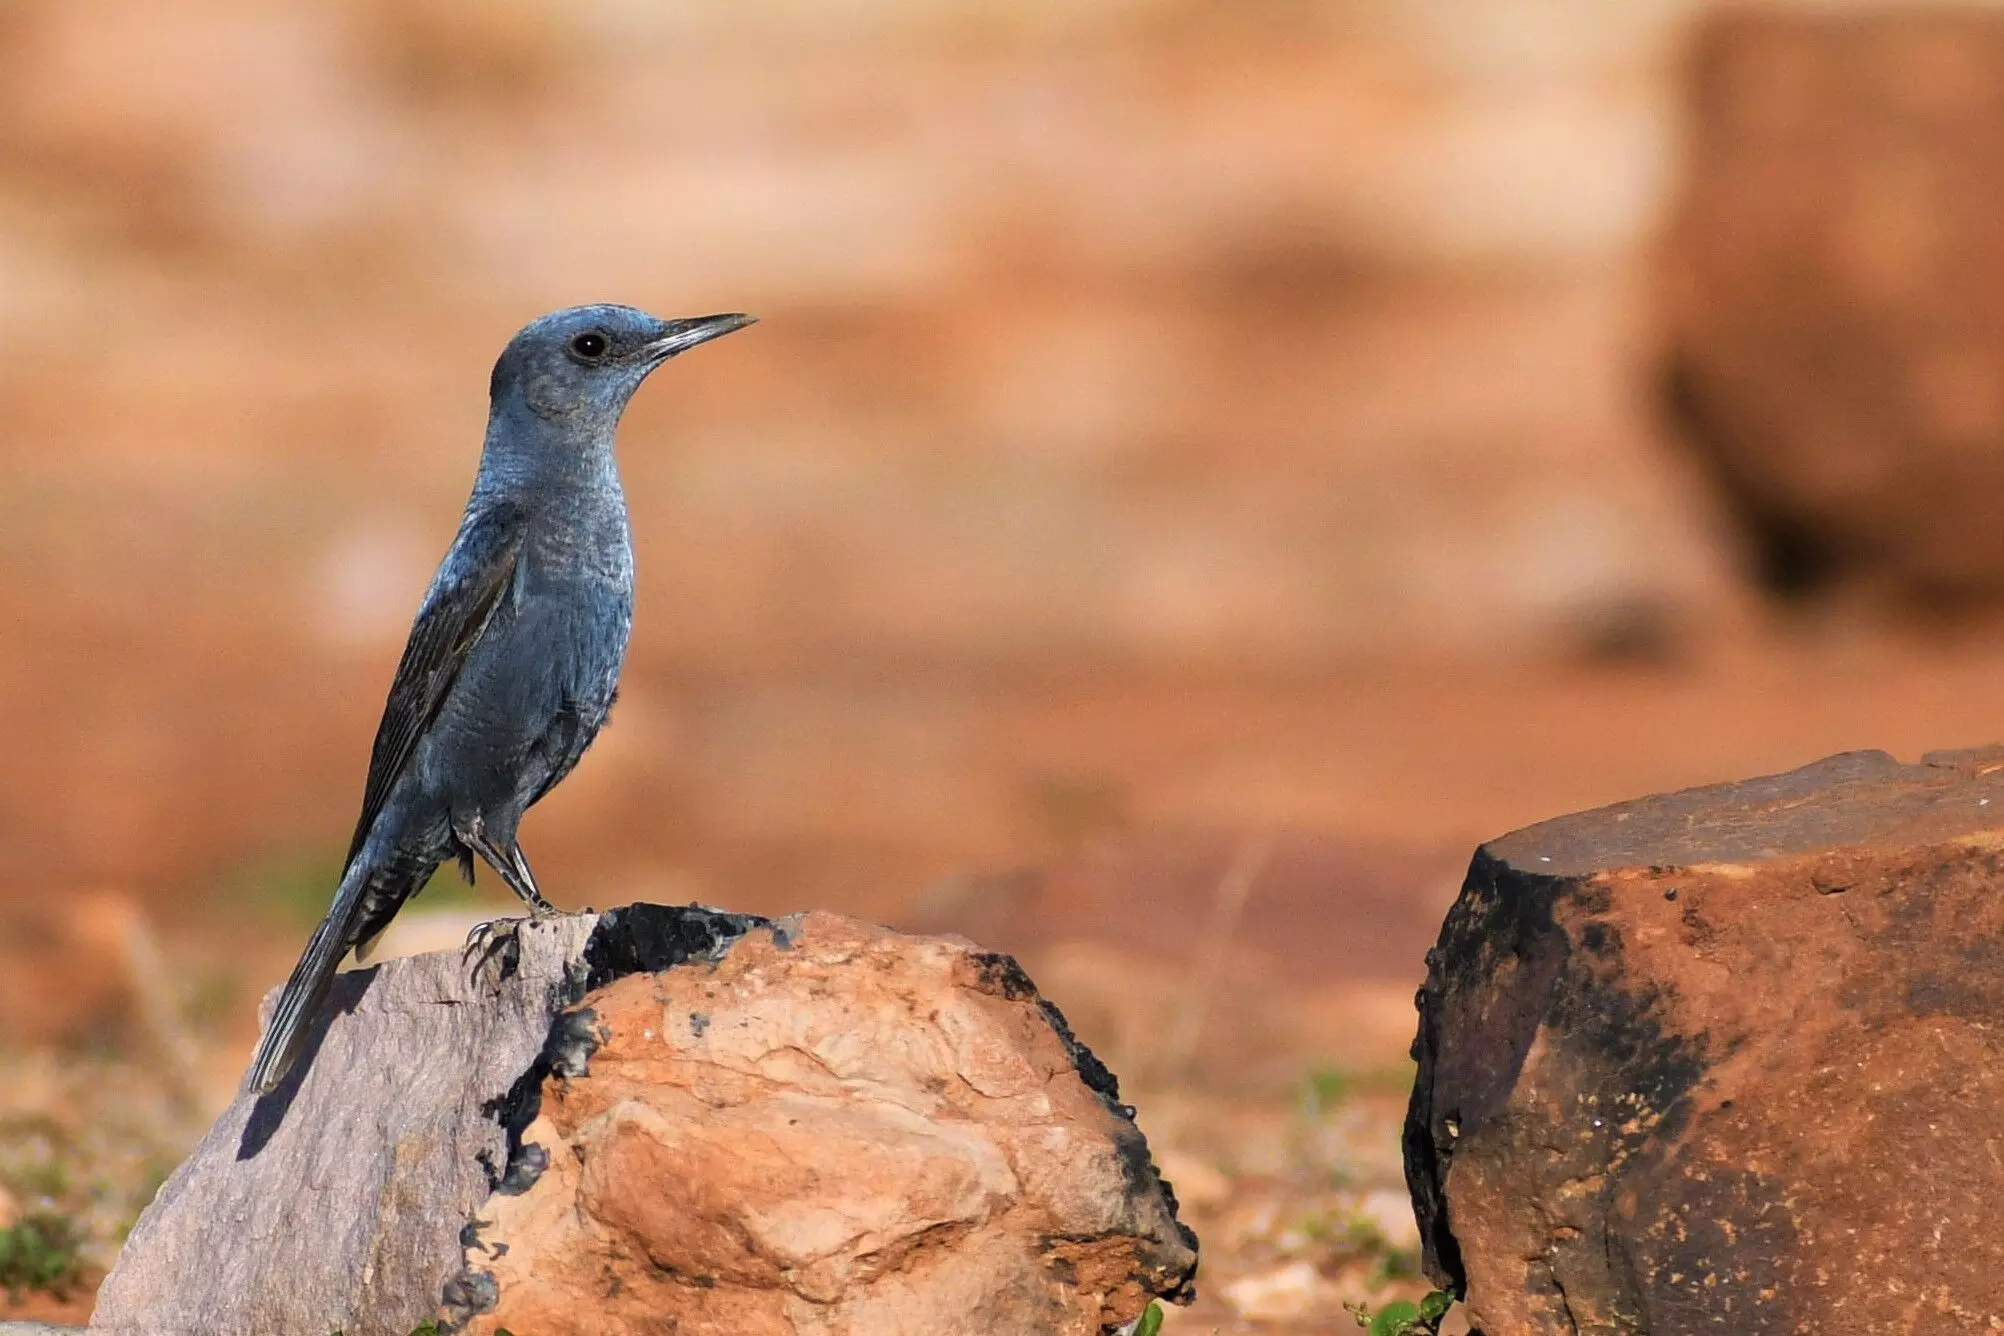 मध्य प्रदेश का पन्ना टाइगर रिजर्व दुर्लभ पक्षियों का घर, सर्वेक्षण में मिले 247 प्रजाति के पक्षी